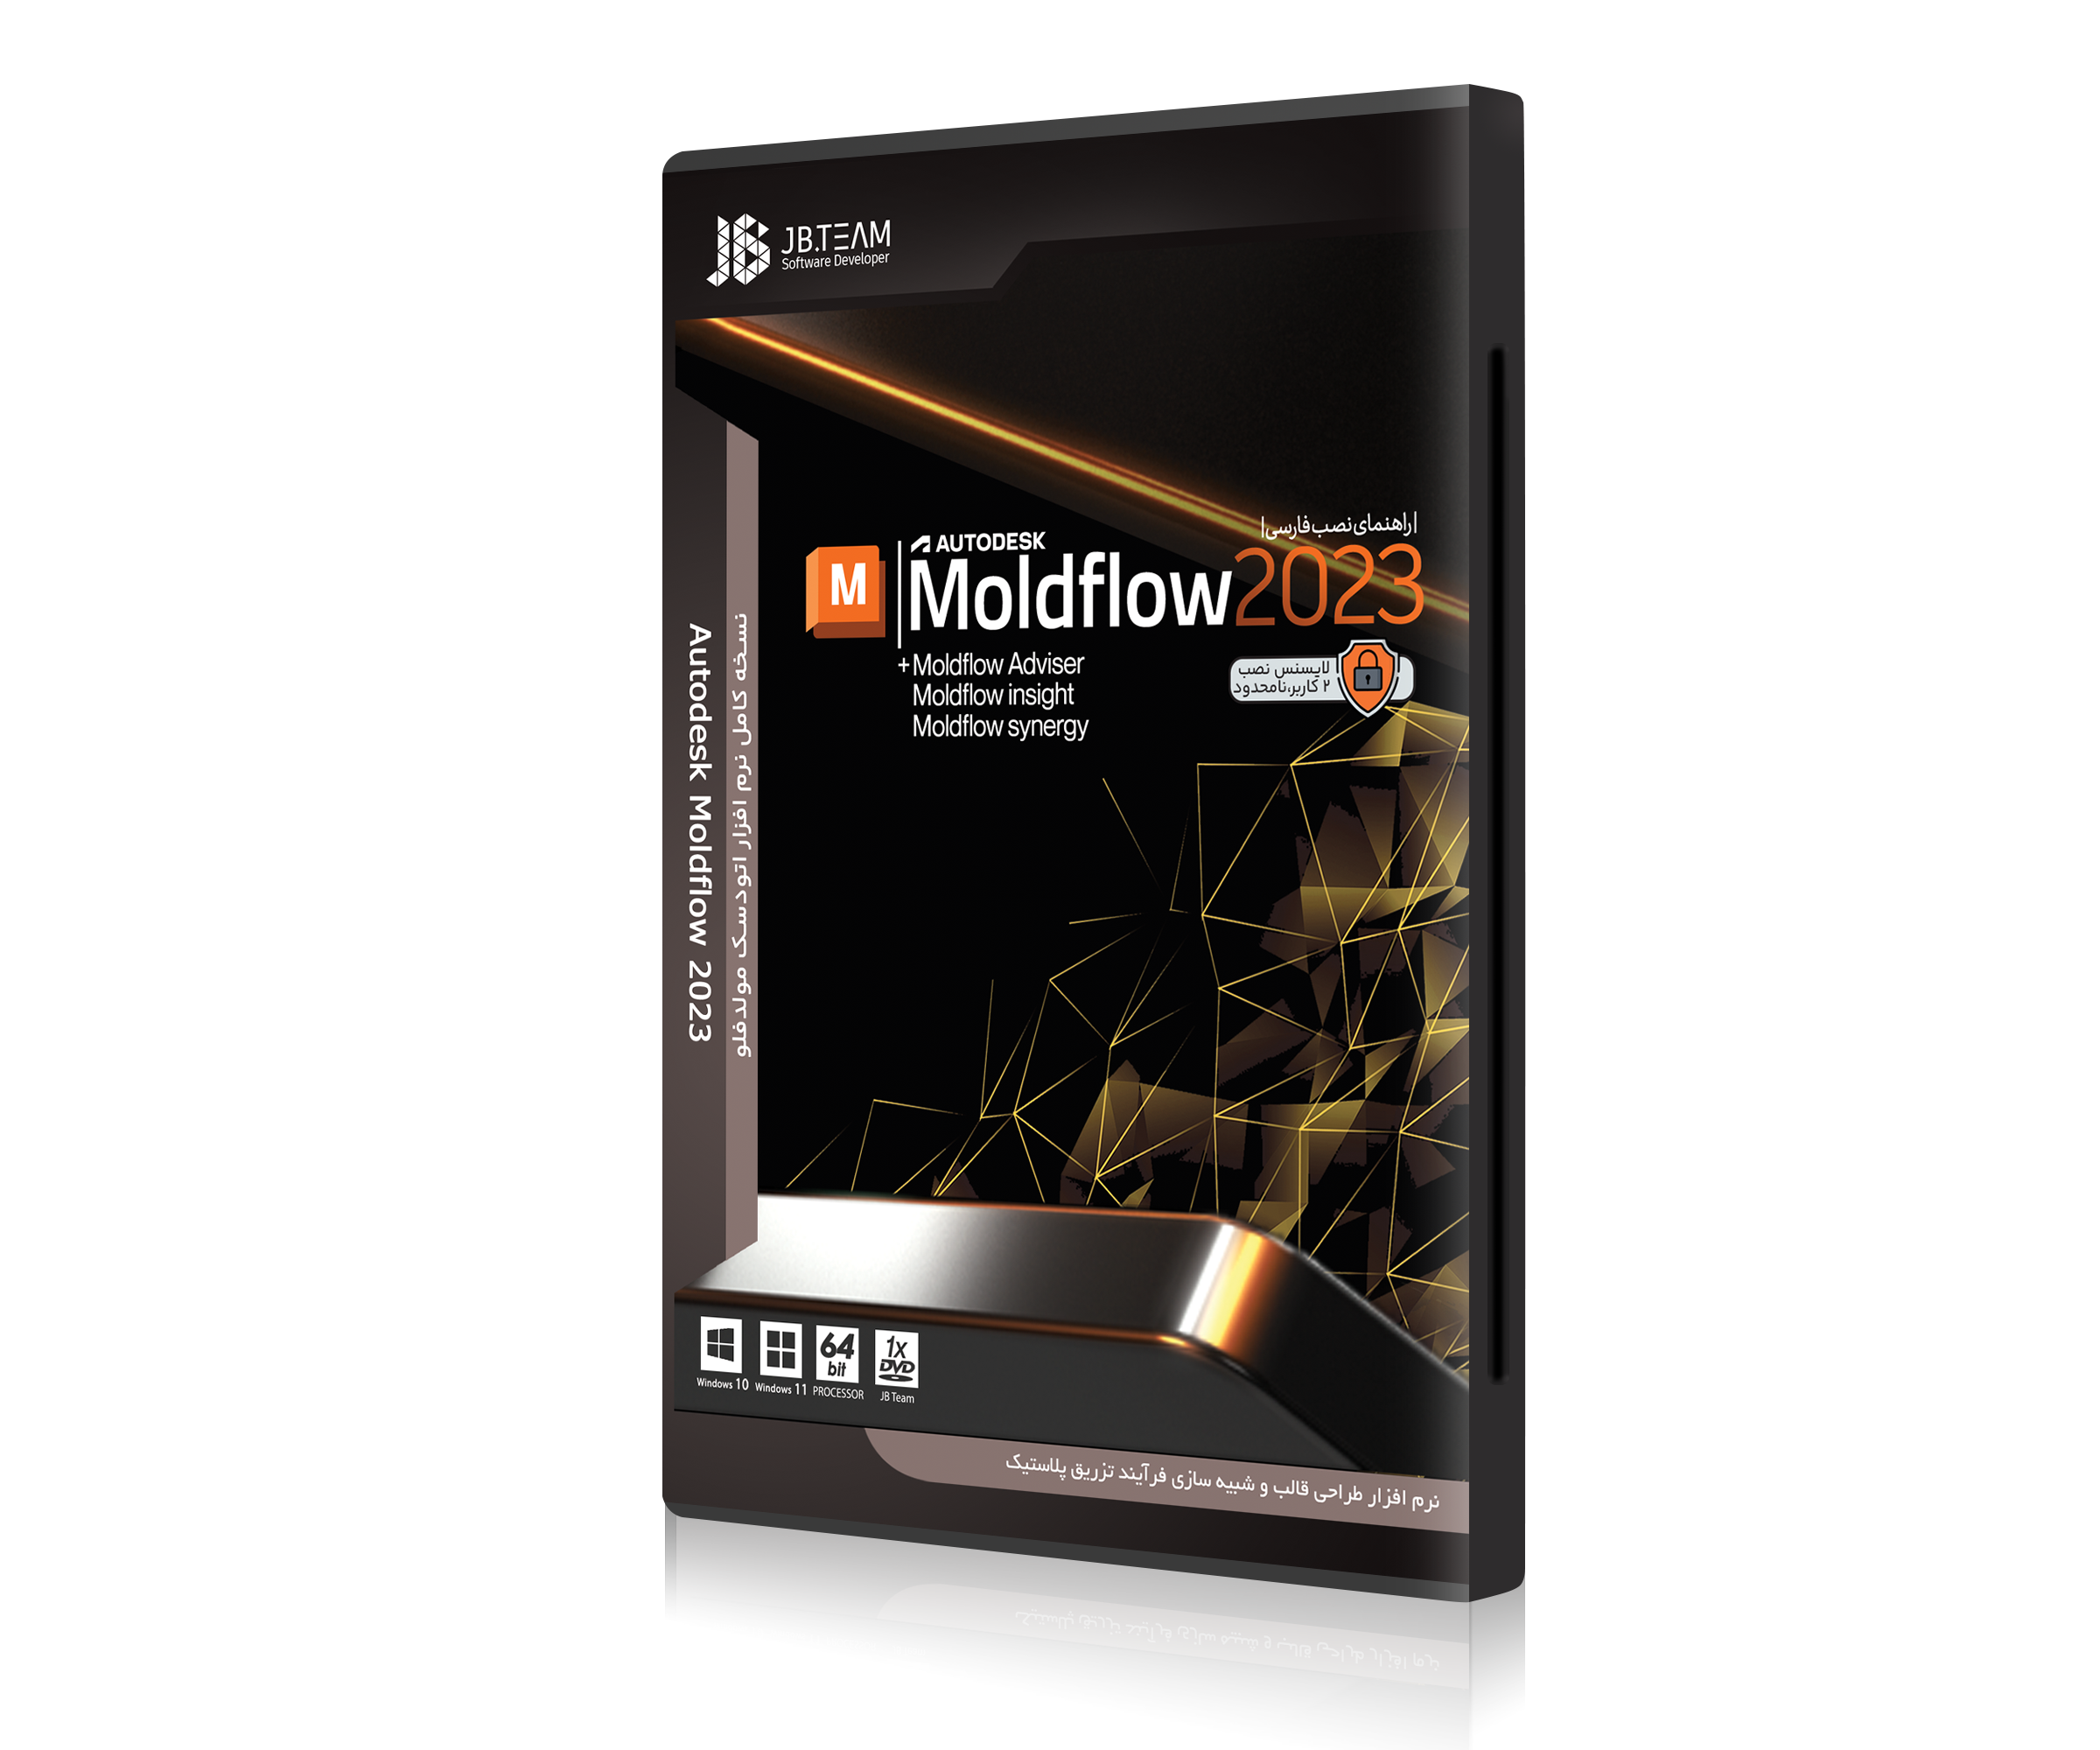 Moldflow 2023